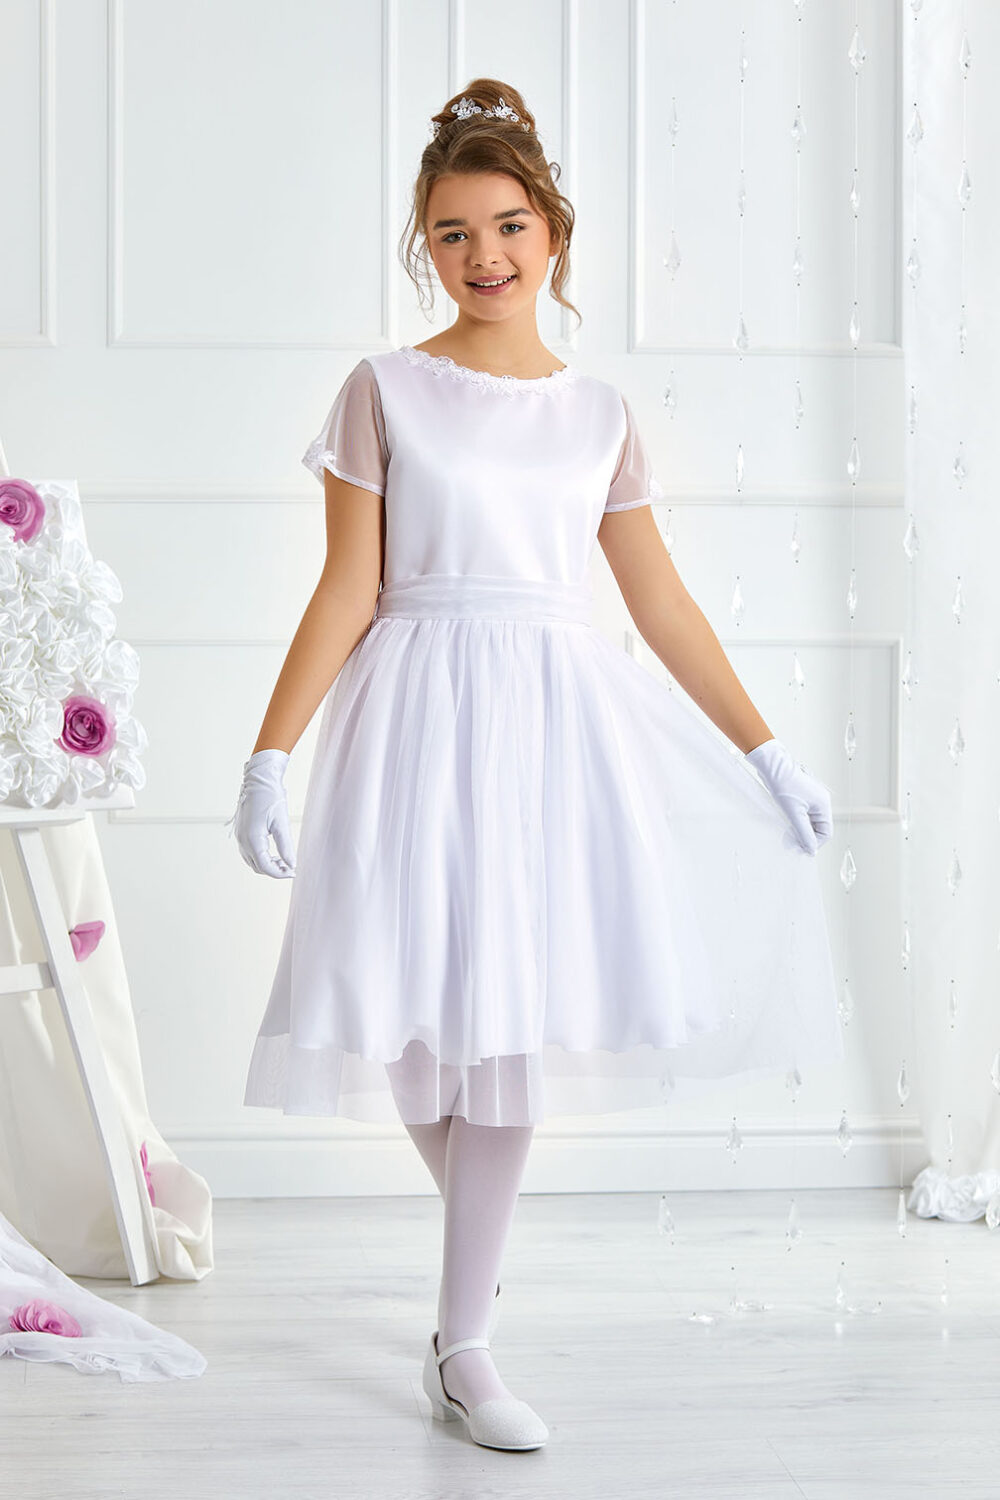 sukienka dla dziewczynki na komunie biala tkanina slubna przod